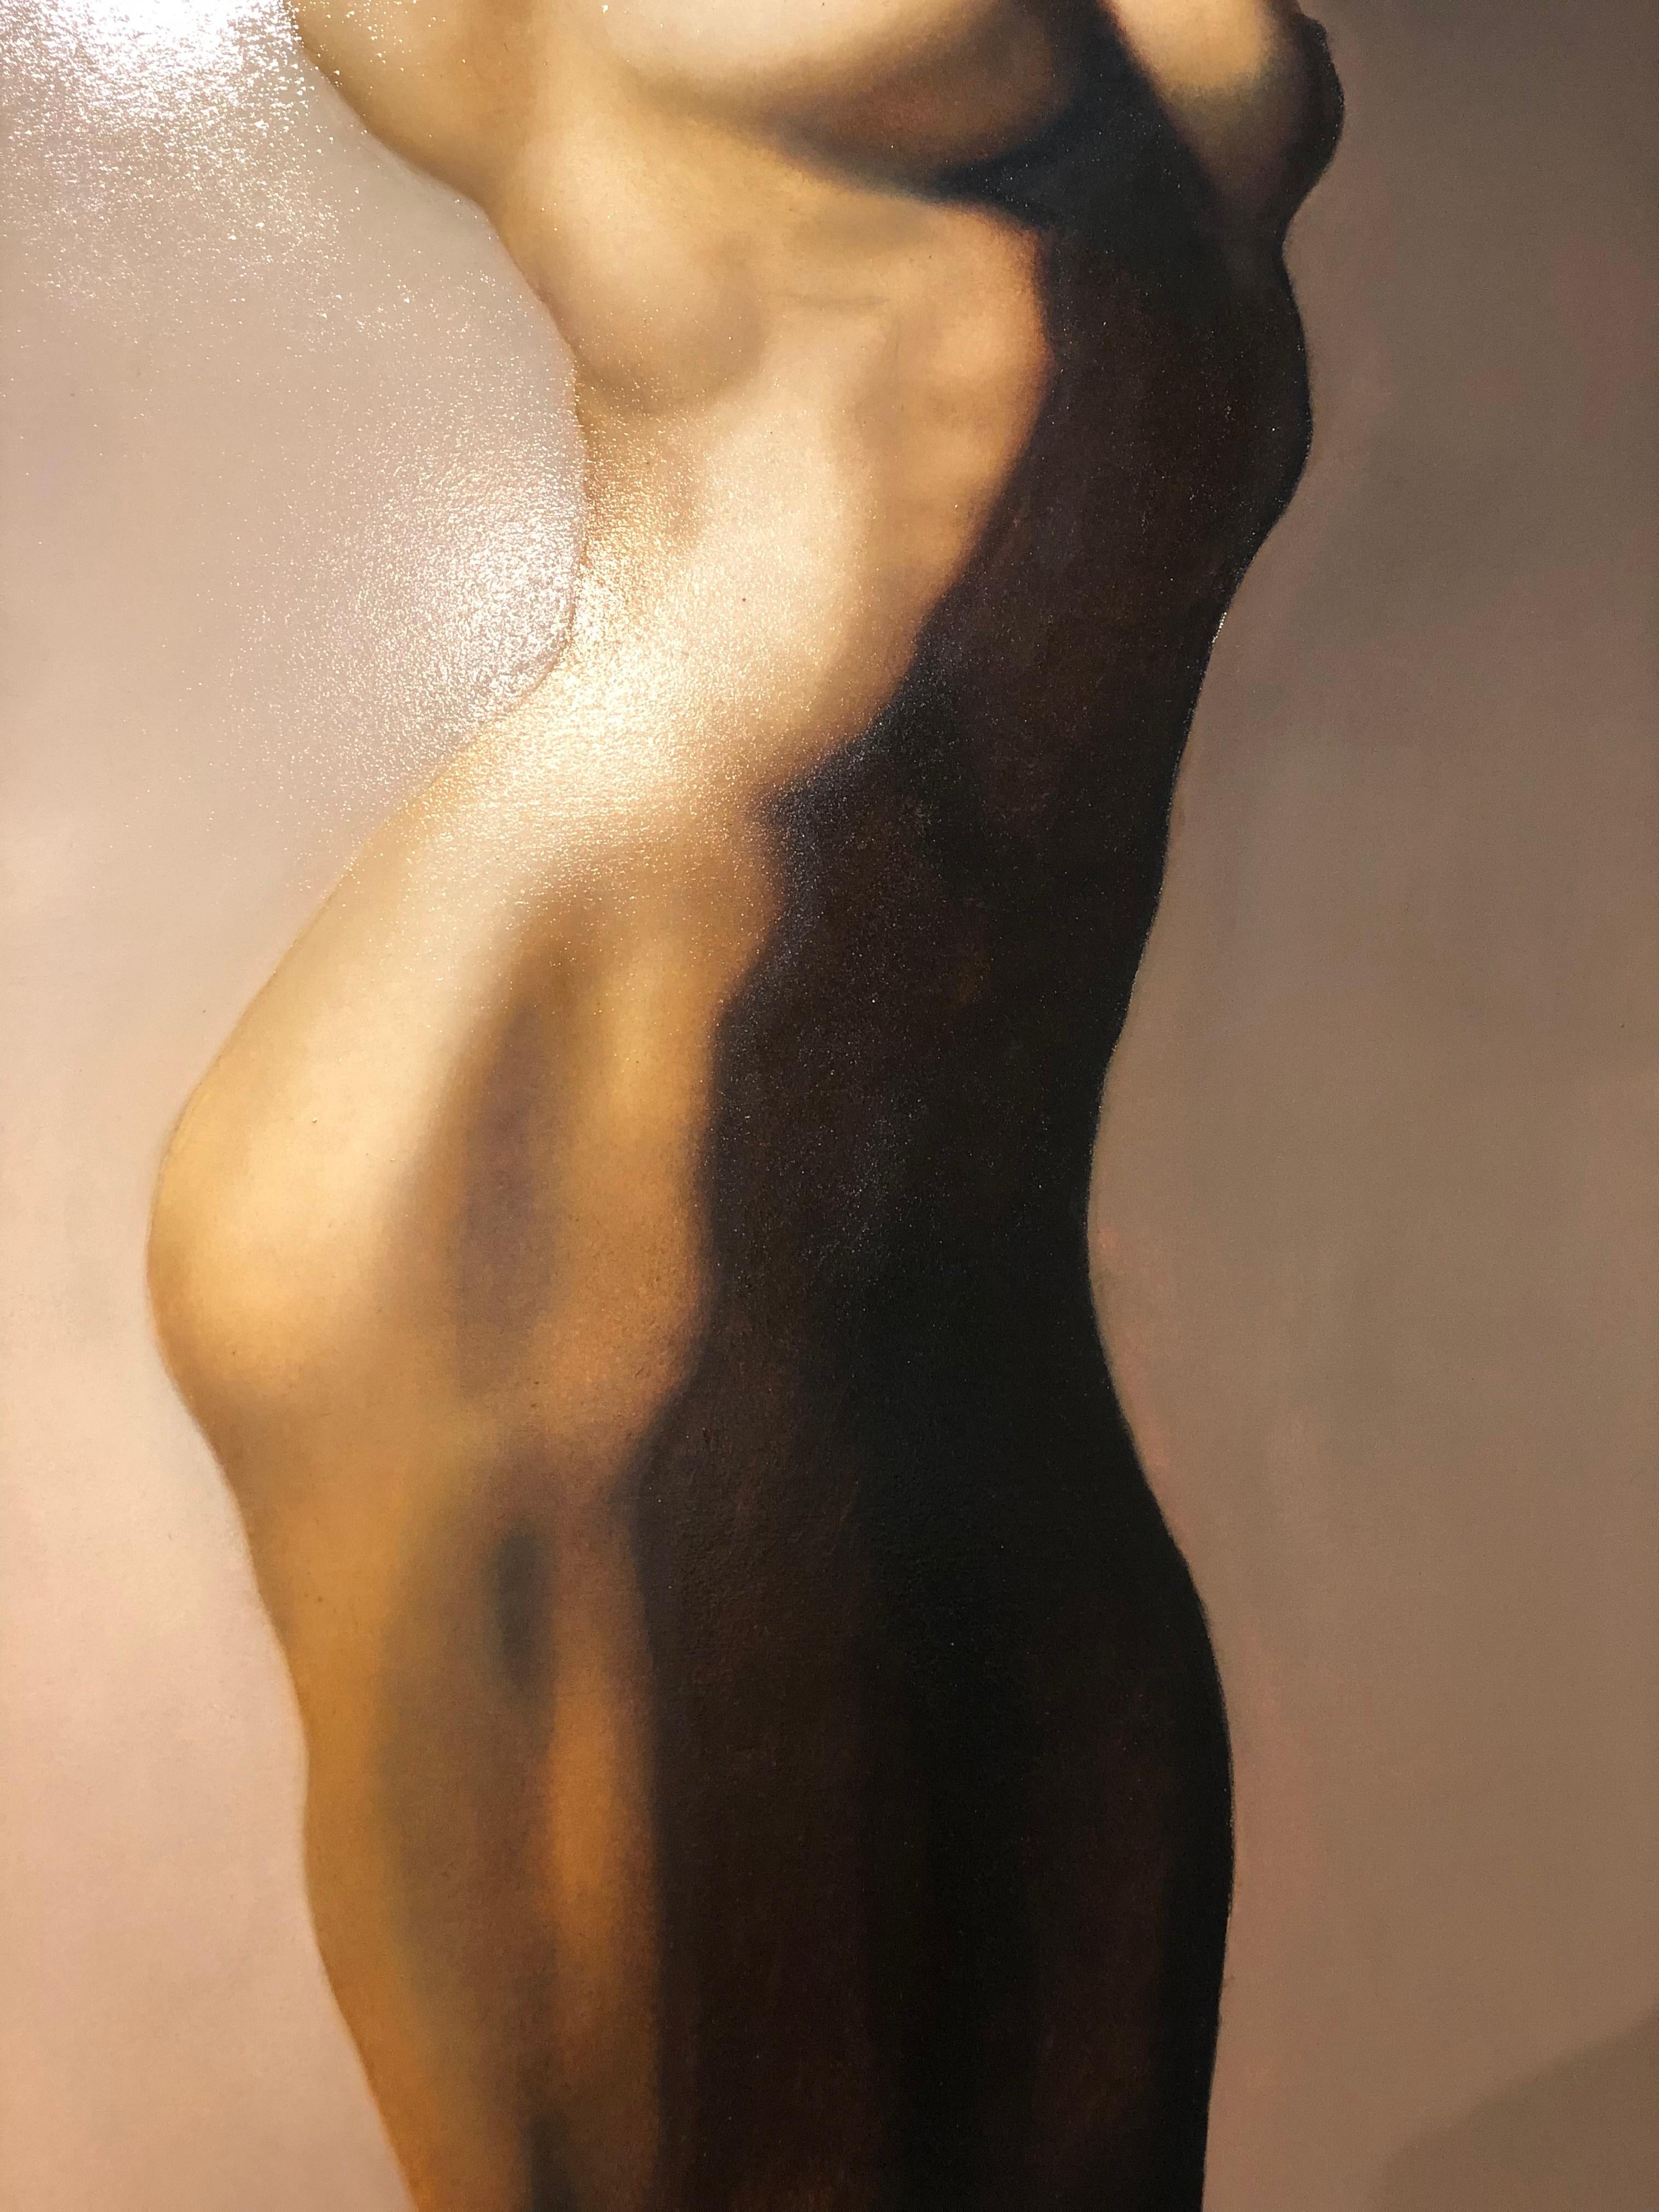 For Martha est une peinture de nu féminin utilisant la lumière et l'ombre pour créer des lignes verticales fortes accentuant les courbes naturelles du corps à l'aide de coups de pinceau doux, presque indétectables,  Cette œuvre est